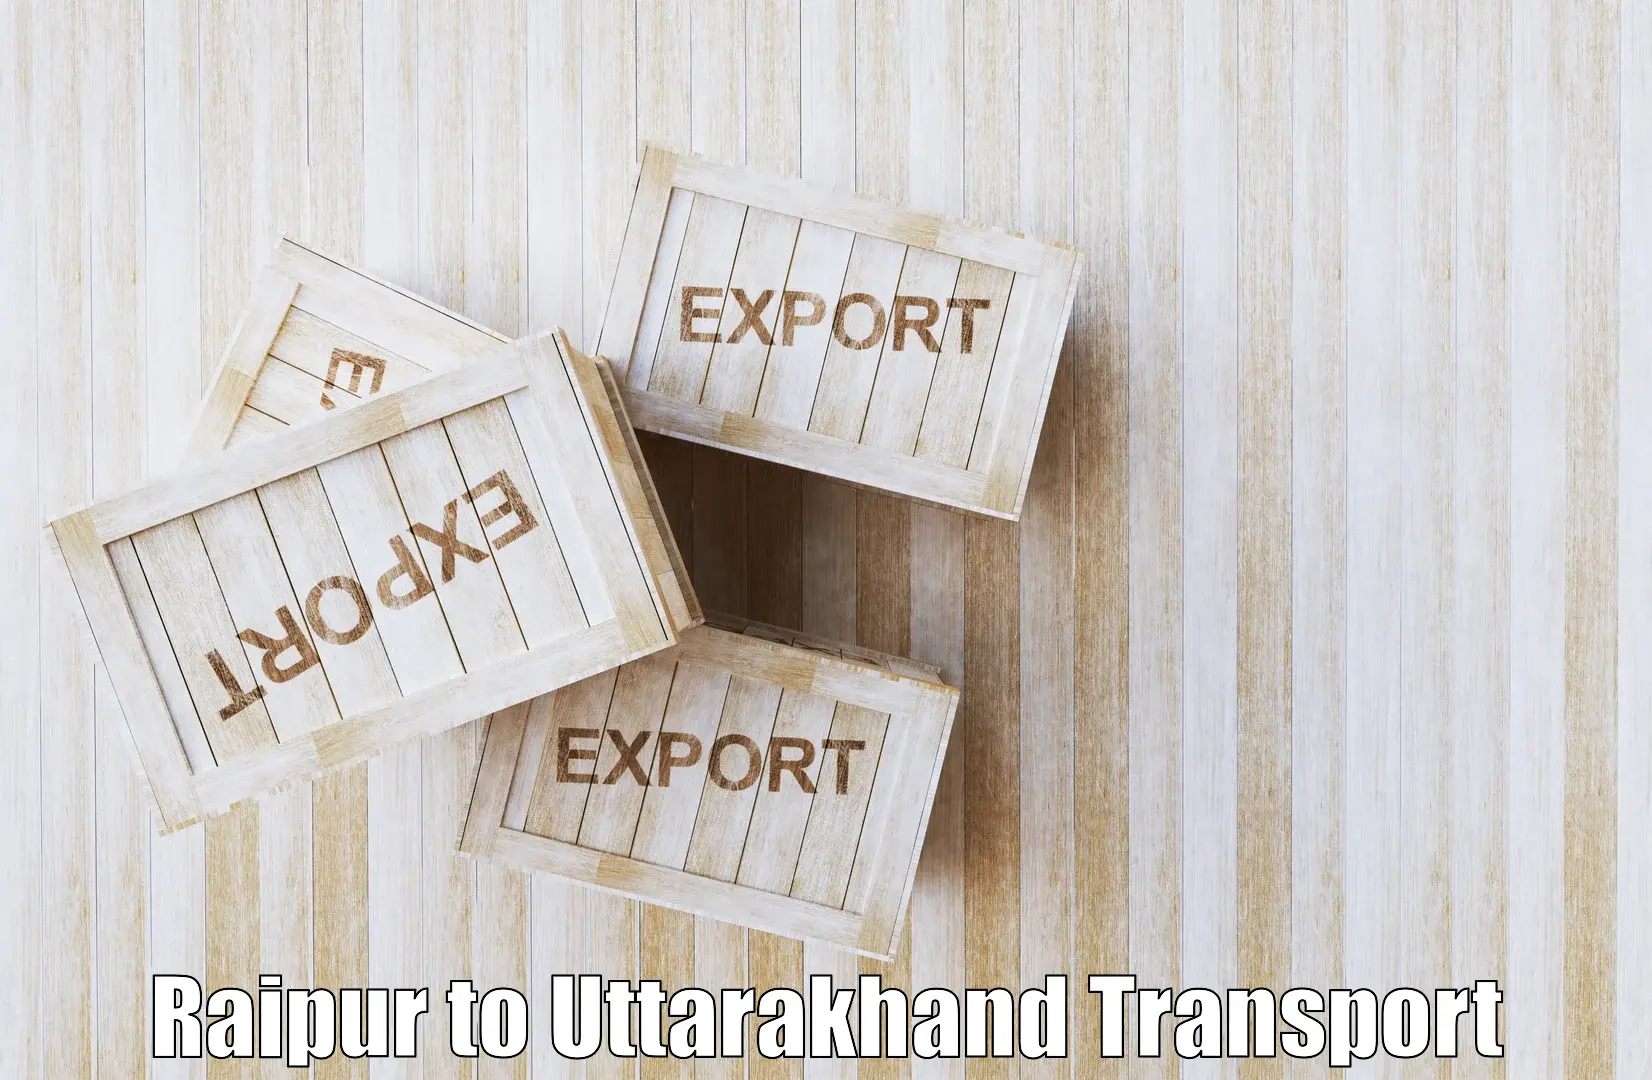 Material transport services Raipur to Dehradun